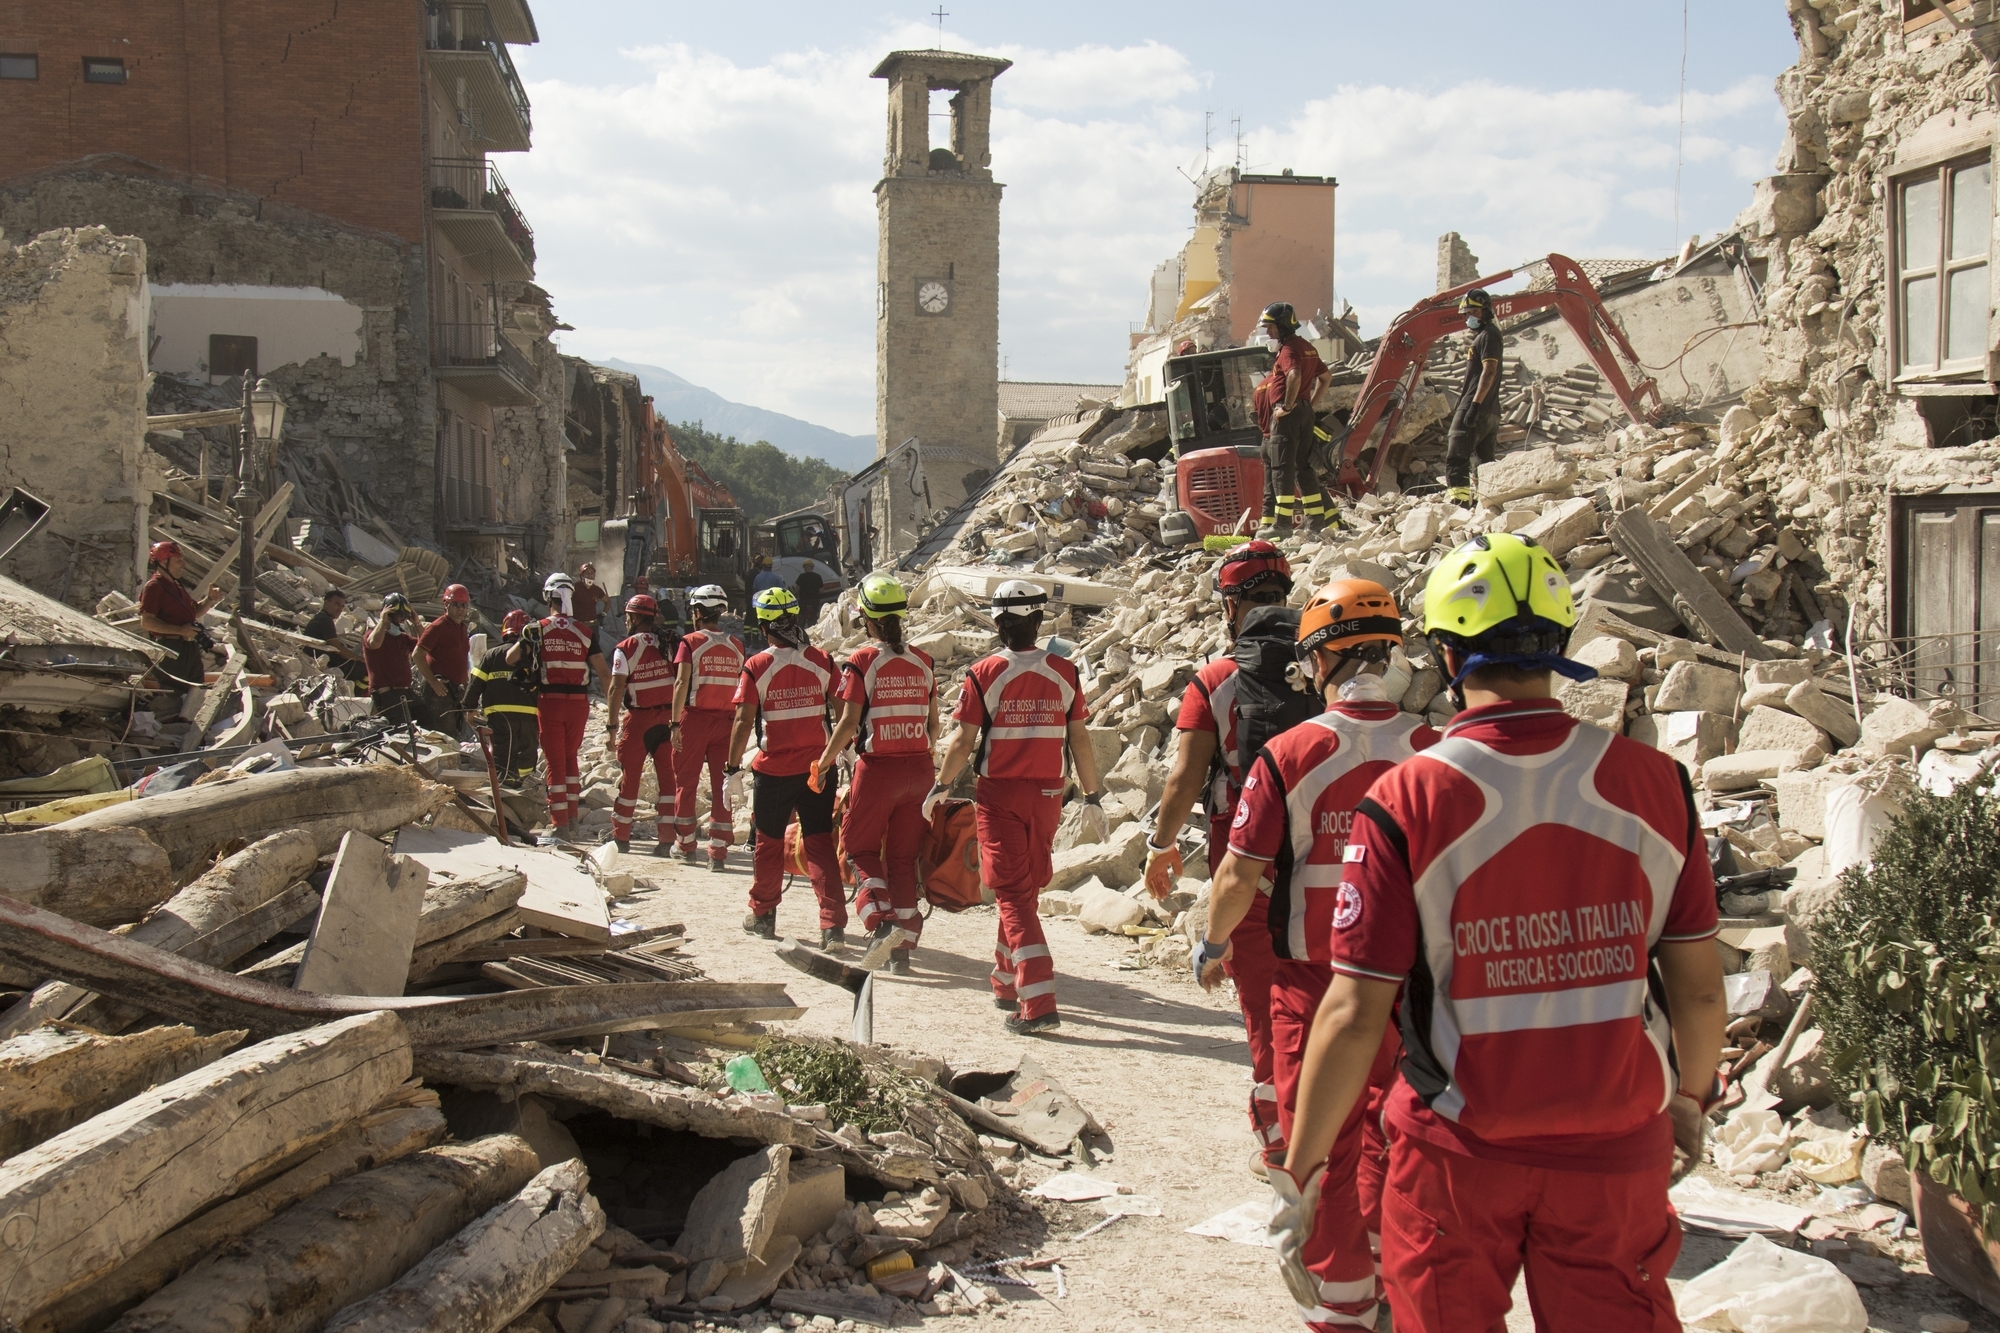 Оперативный мониторинг последствий землетрясения в Италии для МЧС России (30.08.16)